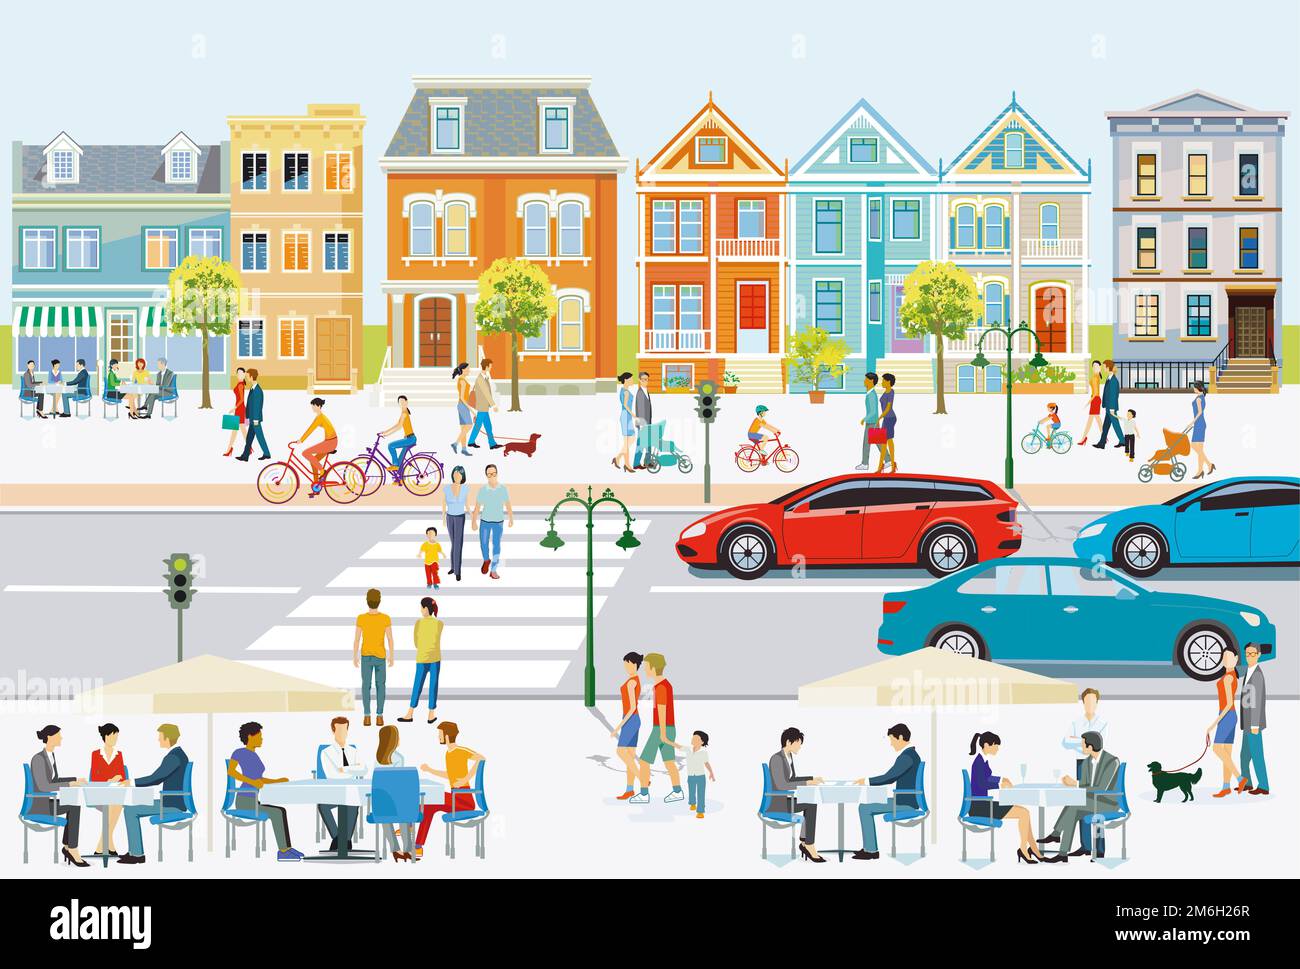 La vie urbaine, avec la circulation routière, les piétons et les familles à temps libre, illustration Banque D'Images